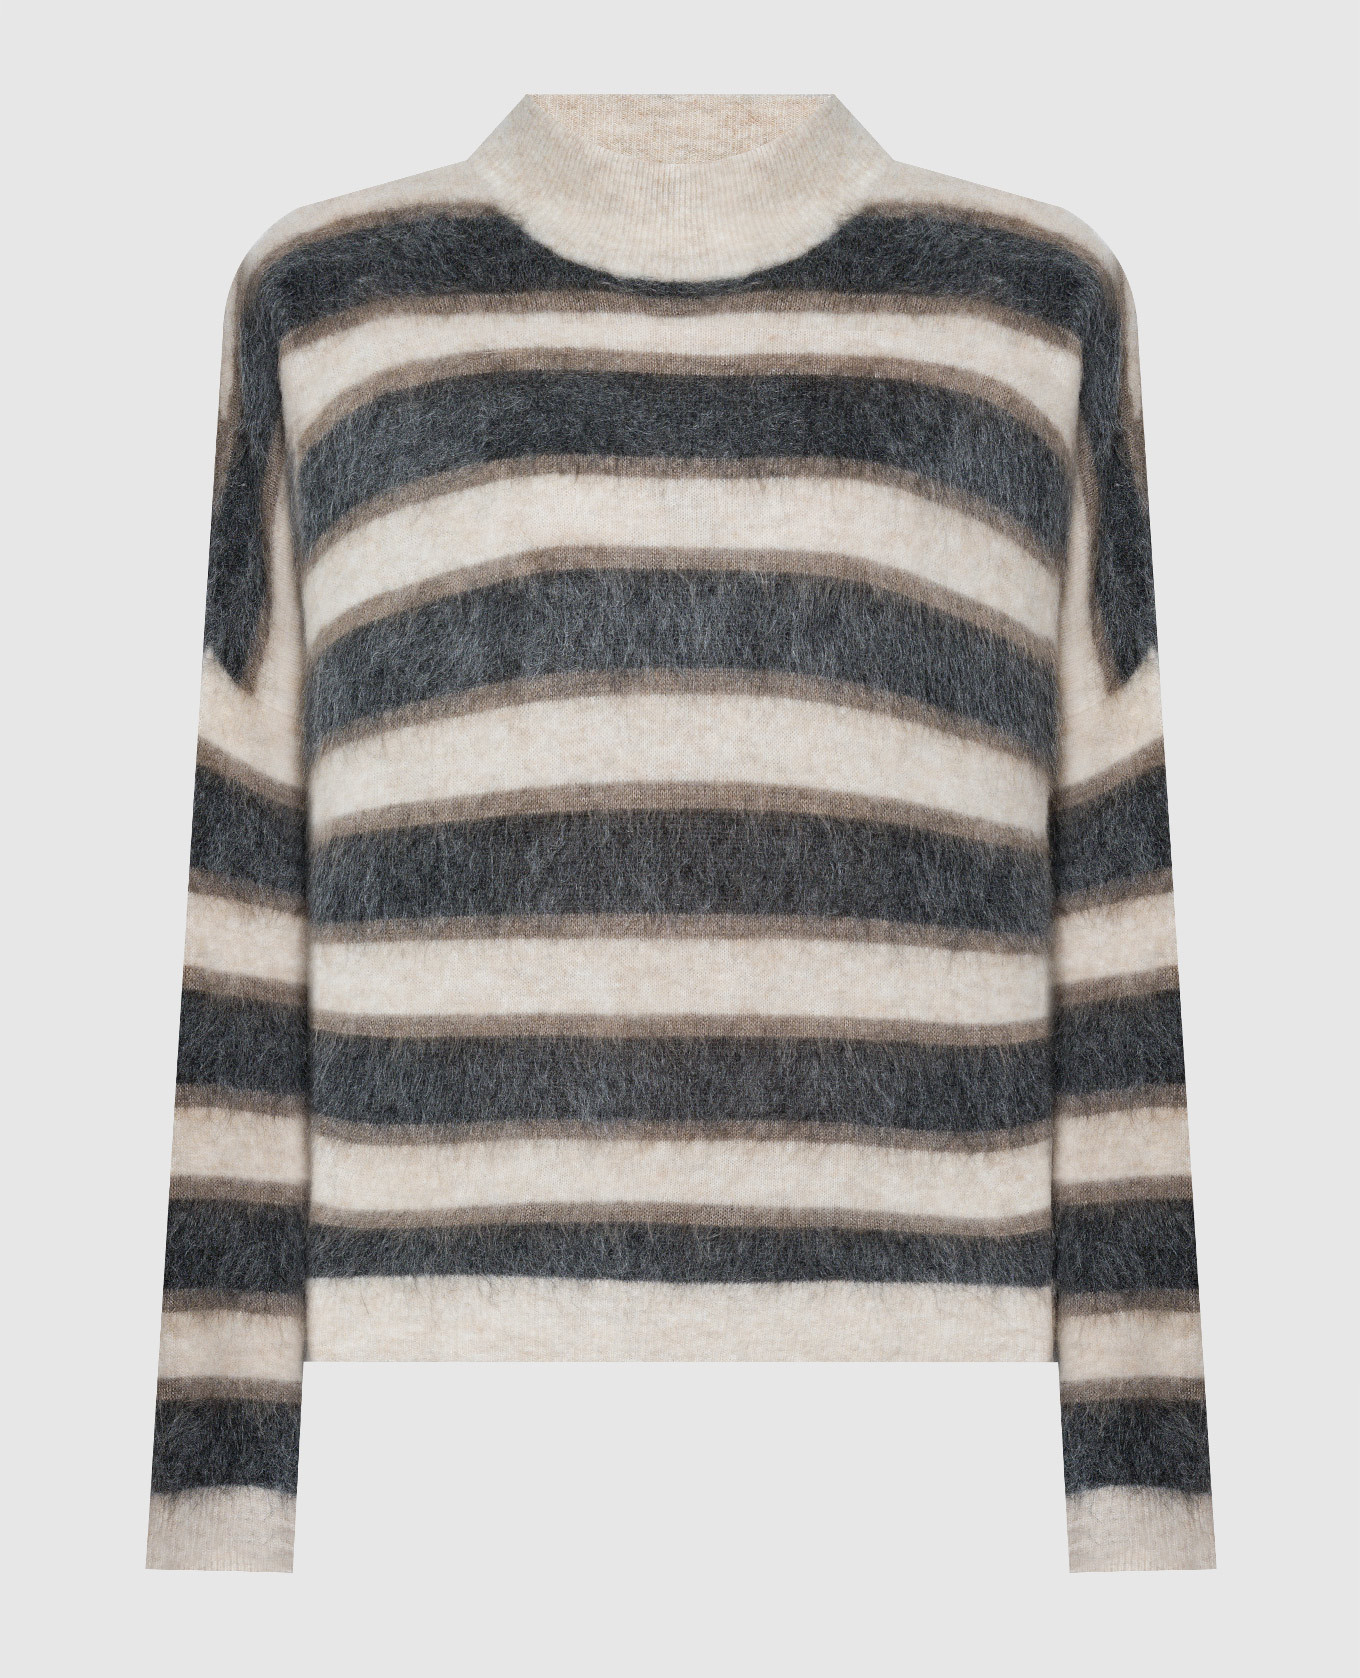 Sweater in a stripe pattern